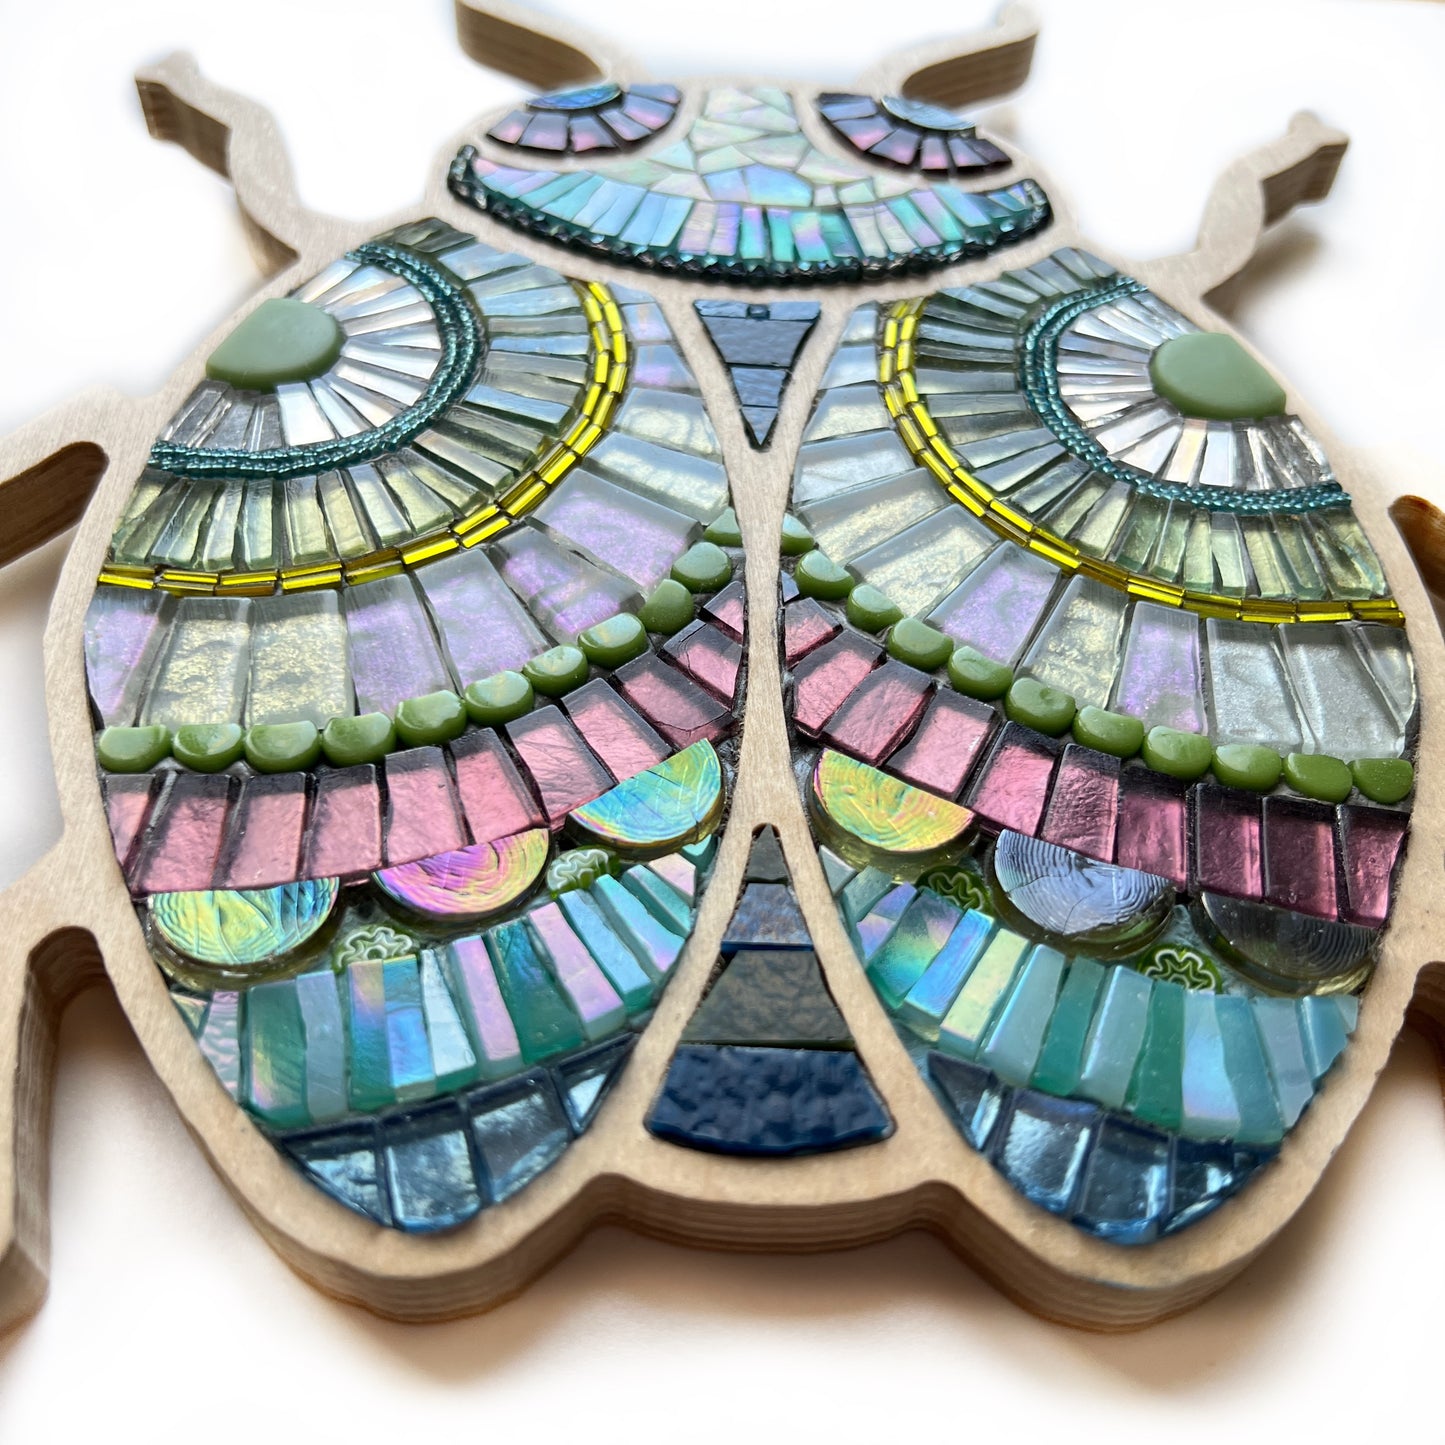 Bug Mosaic by Sharra Frank